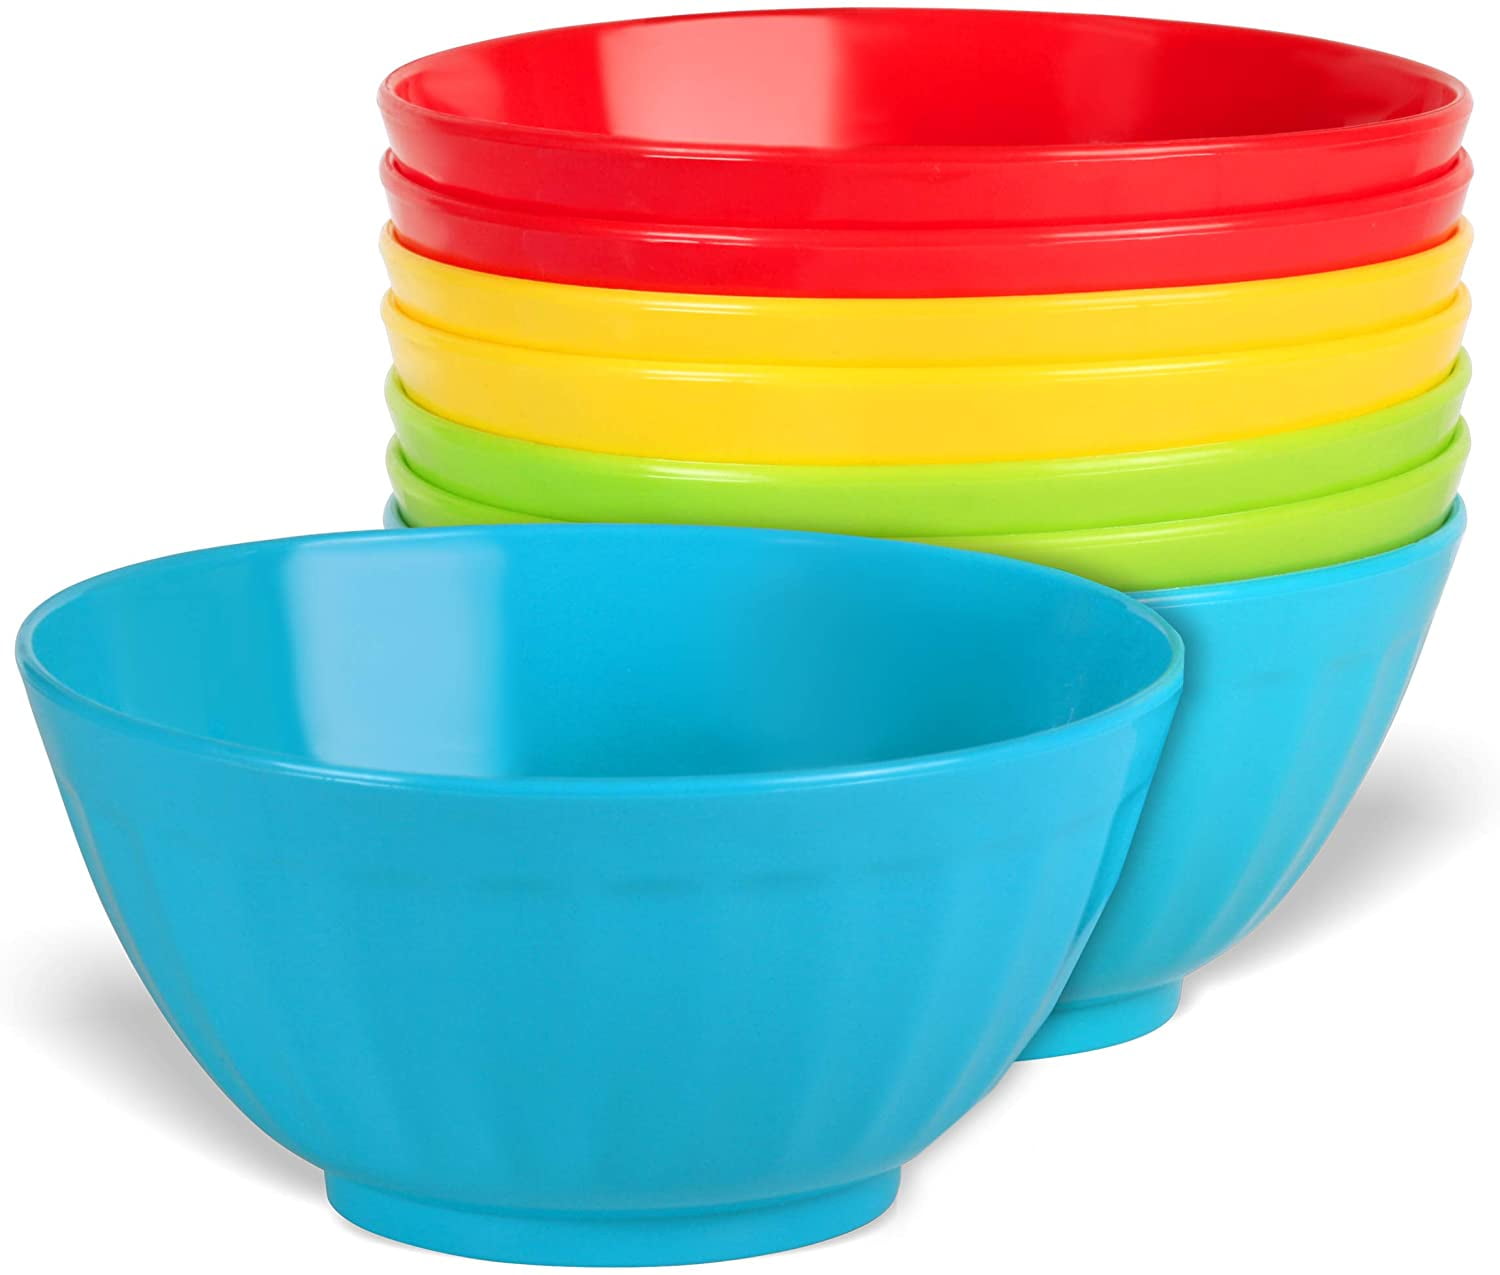 Soup Bowls 28 Oz Bowl Set Microwave Oven Safe Serving Cereal Noodle For Kitchen 